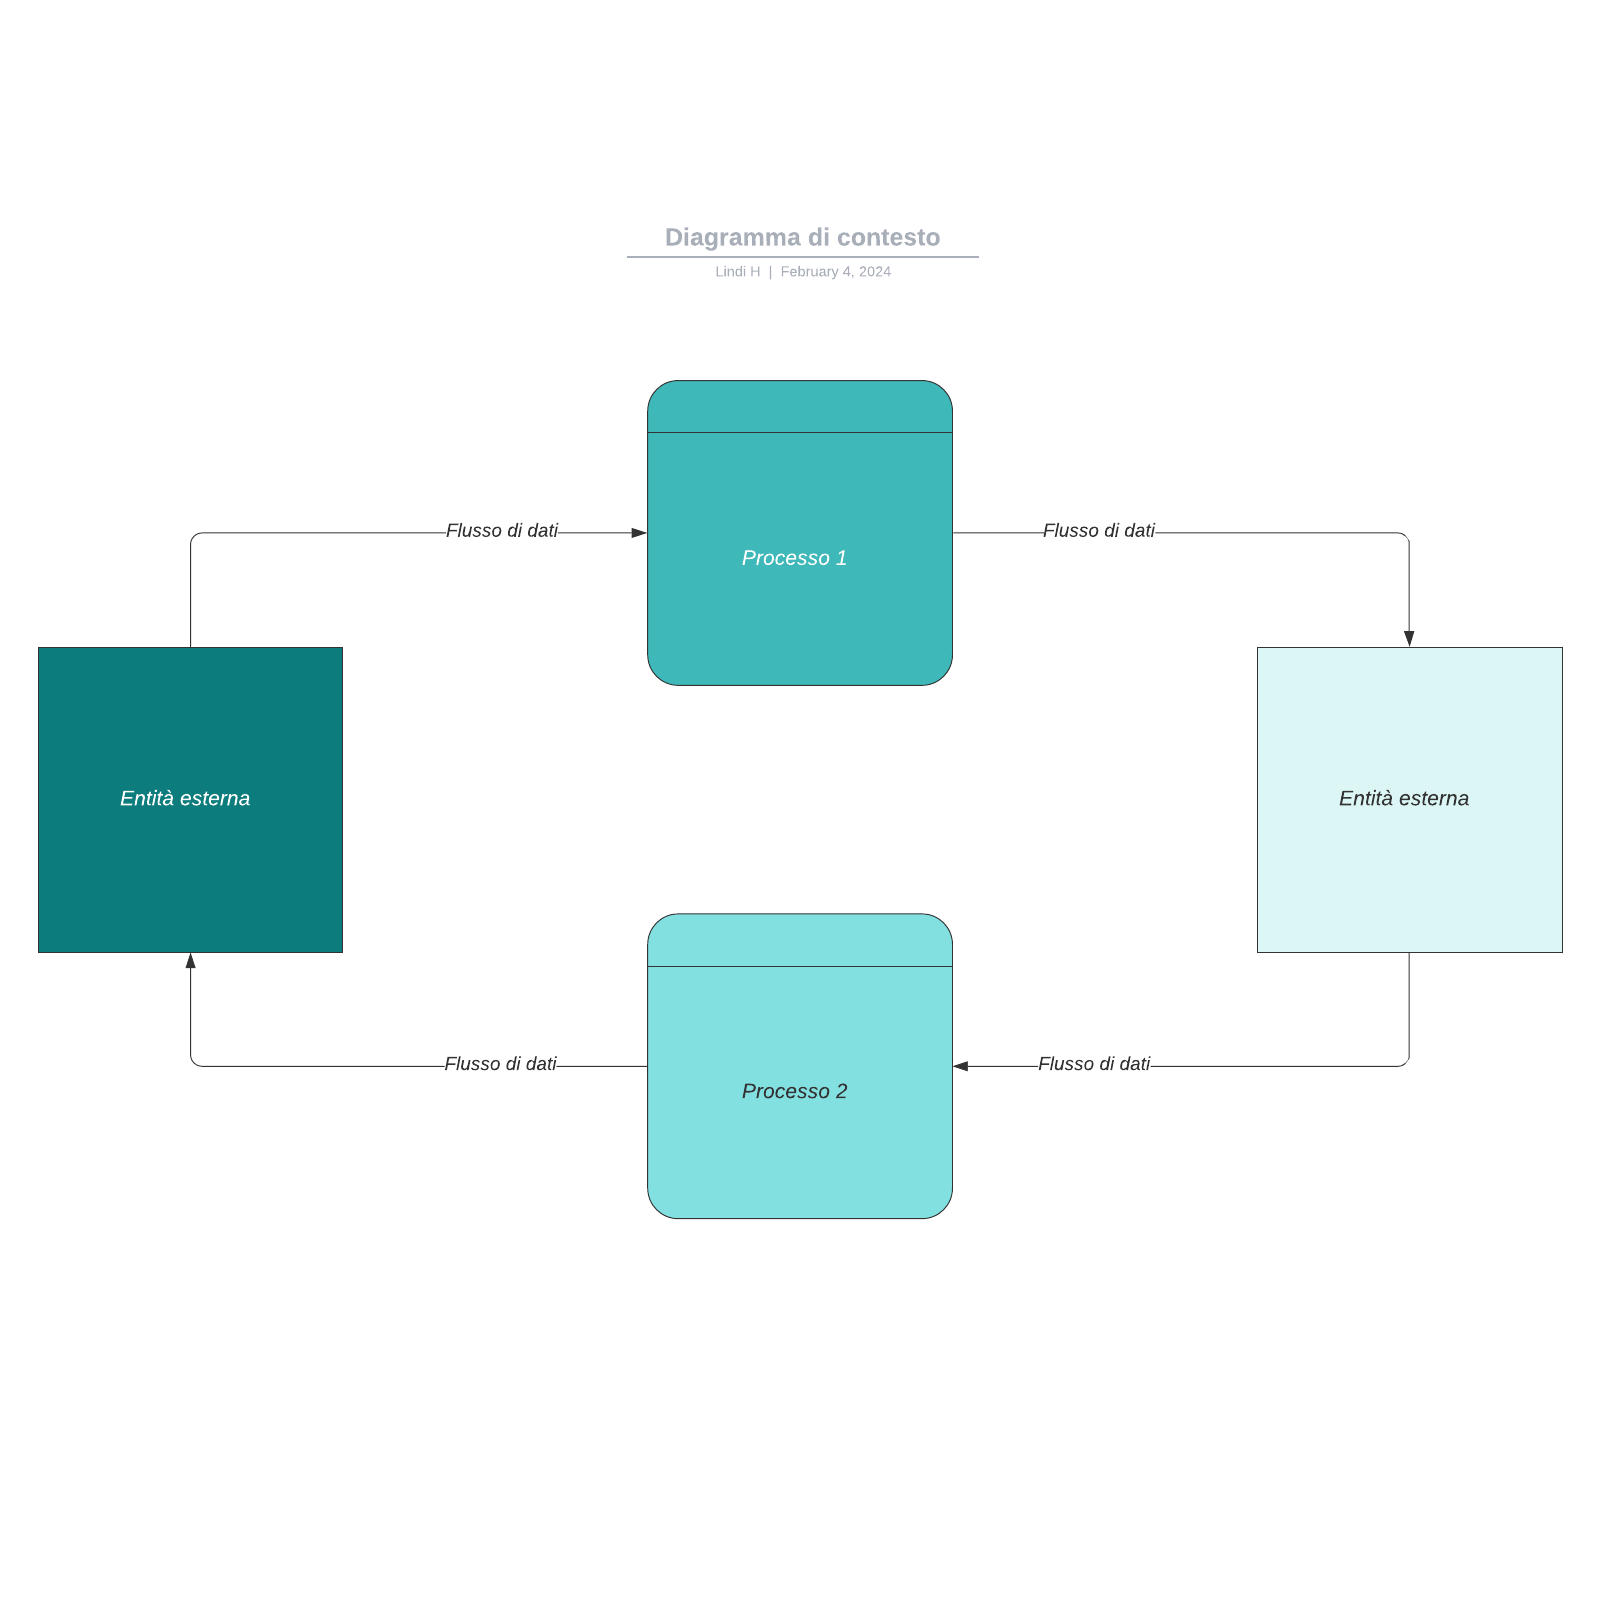 Diagramma di contesto example